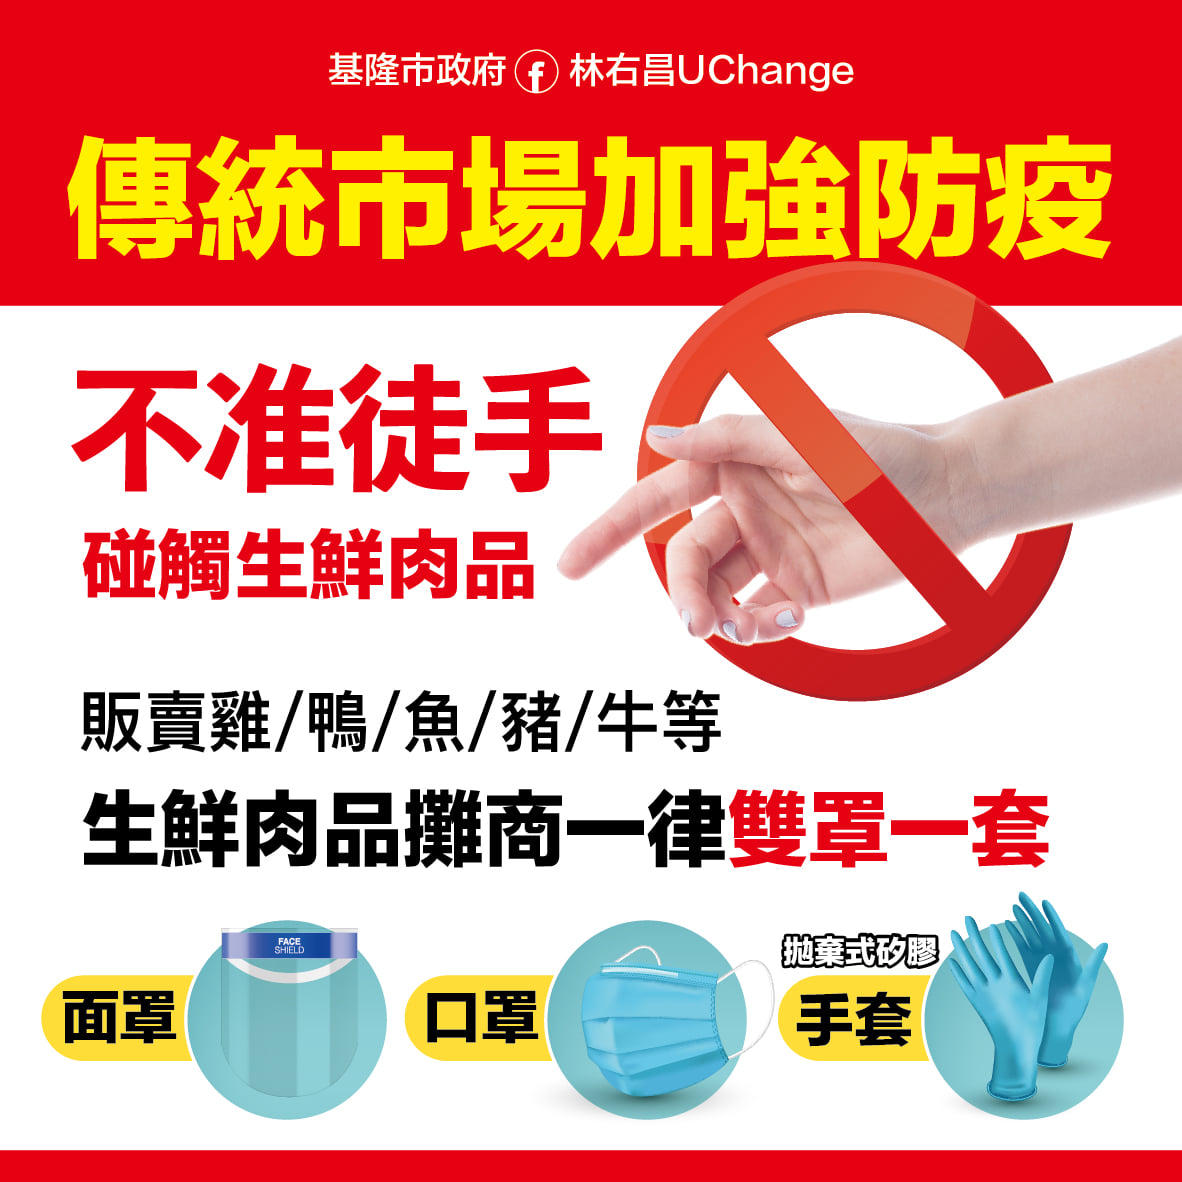  ตลาด Keelung ใช้ "หน้ากากและถุงมือป้องกัน" และผู้ขายจะต้องสวมหน้ากาก และถุงมือซิลิโคนแบบใช้แล้วทิ้ง รูปภาพ/นำมาจาก FacebokLin Youchang UChange 